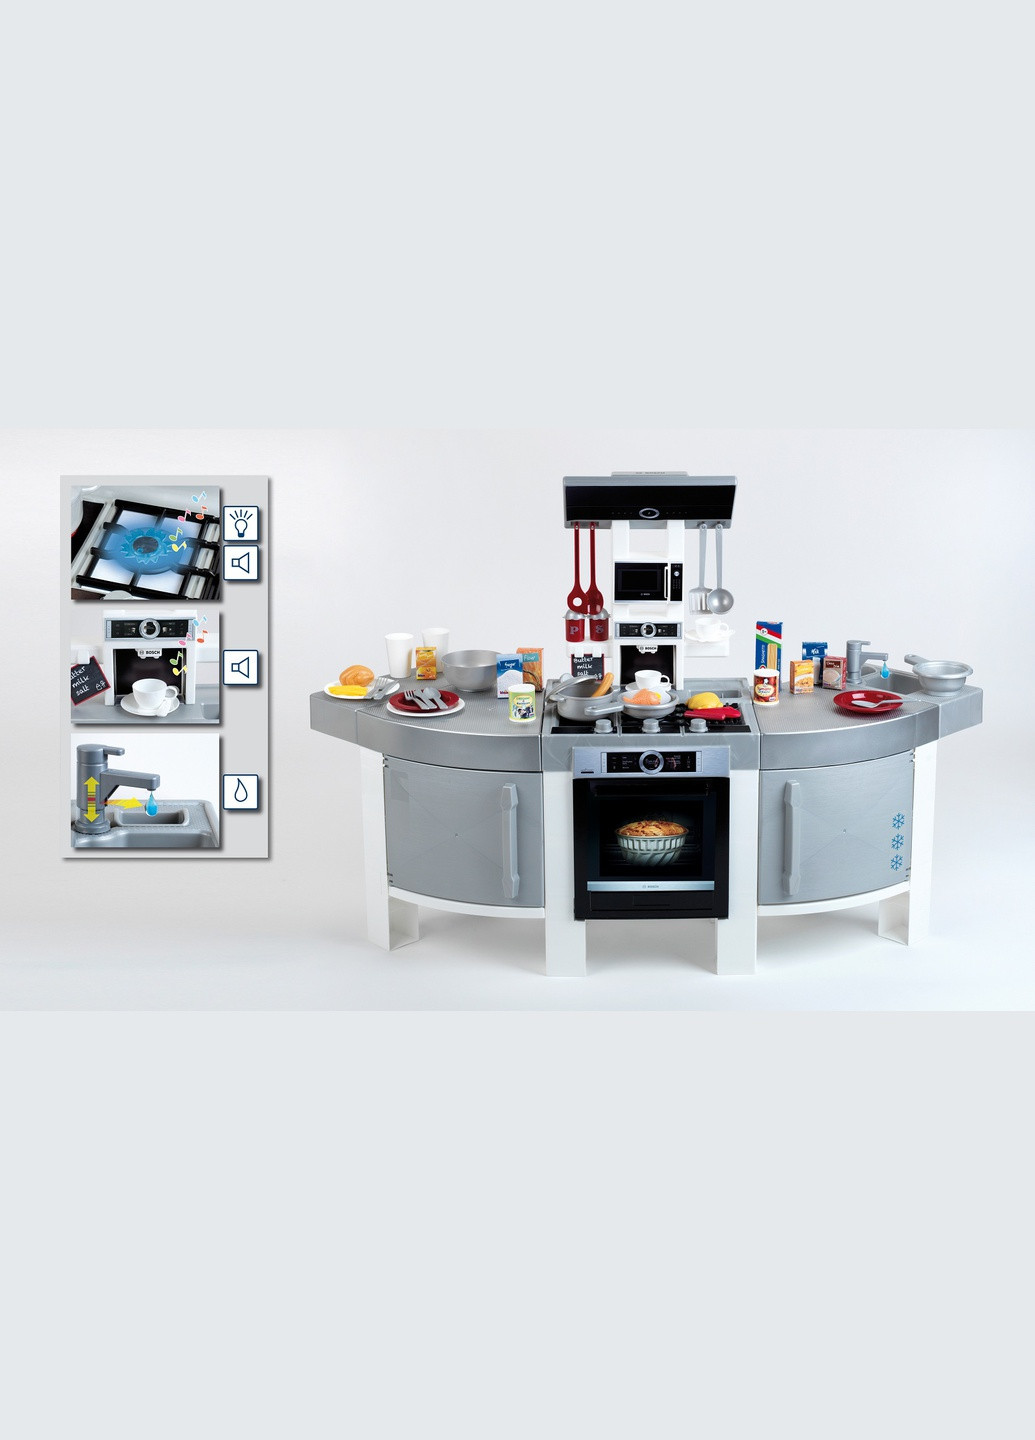 Іграшкова дитяча кухня JUMBO Klein з набором аксесуарів 7156 (9015) Bosch (295037281)